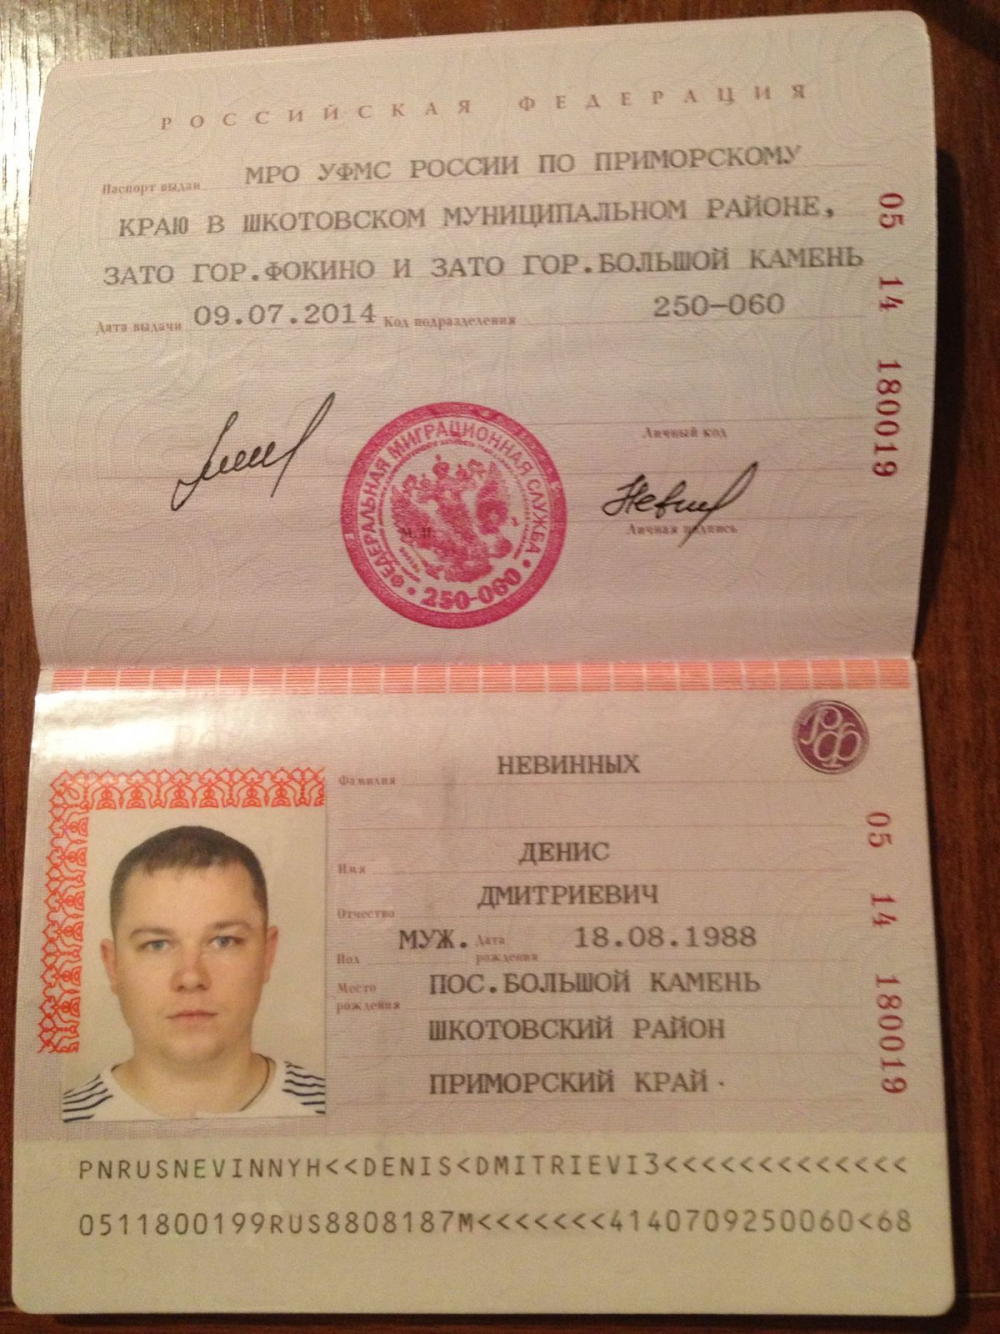 Коды подразделений оуфмс по московской области. Паспортные данные 2000 года.